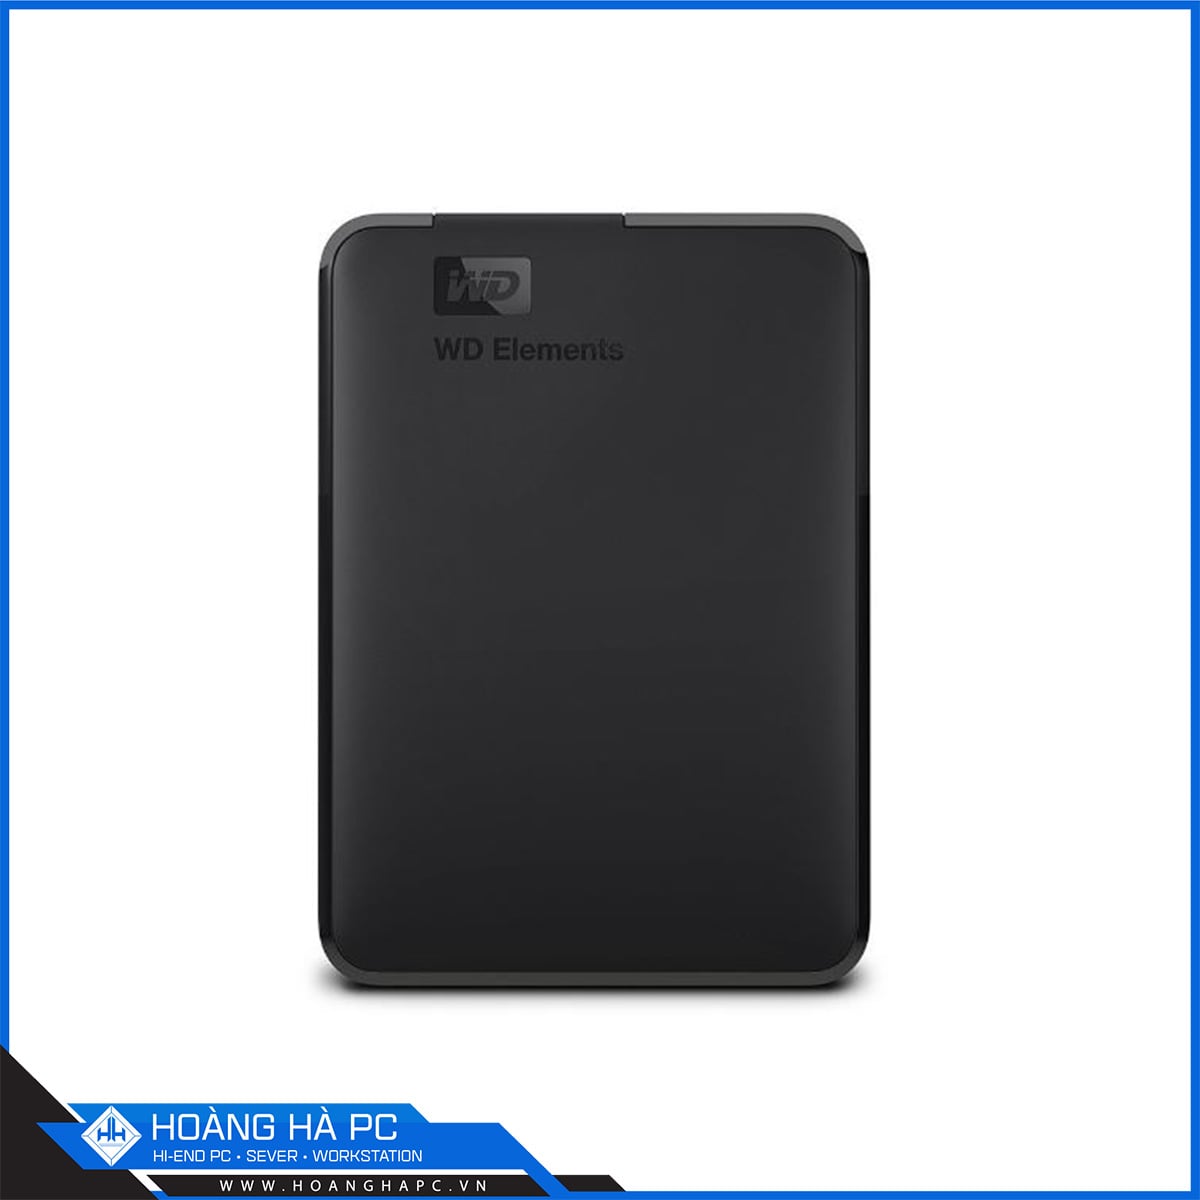 Ổ cứng Western Digital Elements Portable 4TB Black APAC